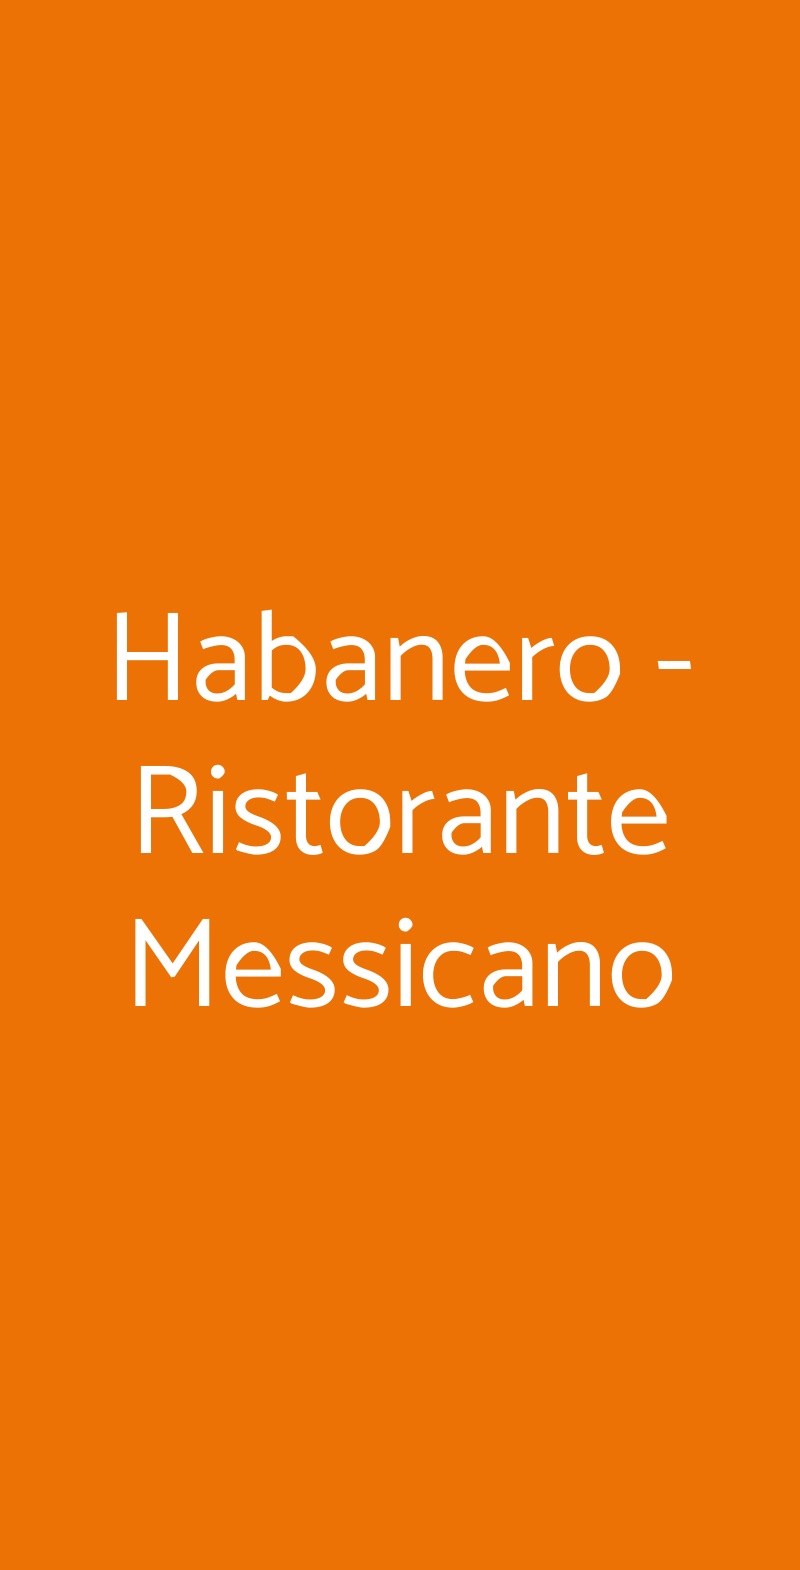 Habanero - Ristorante Messicano Torino menù 1 pagina